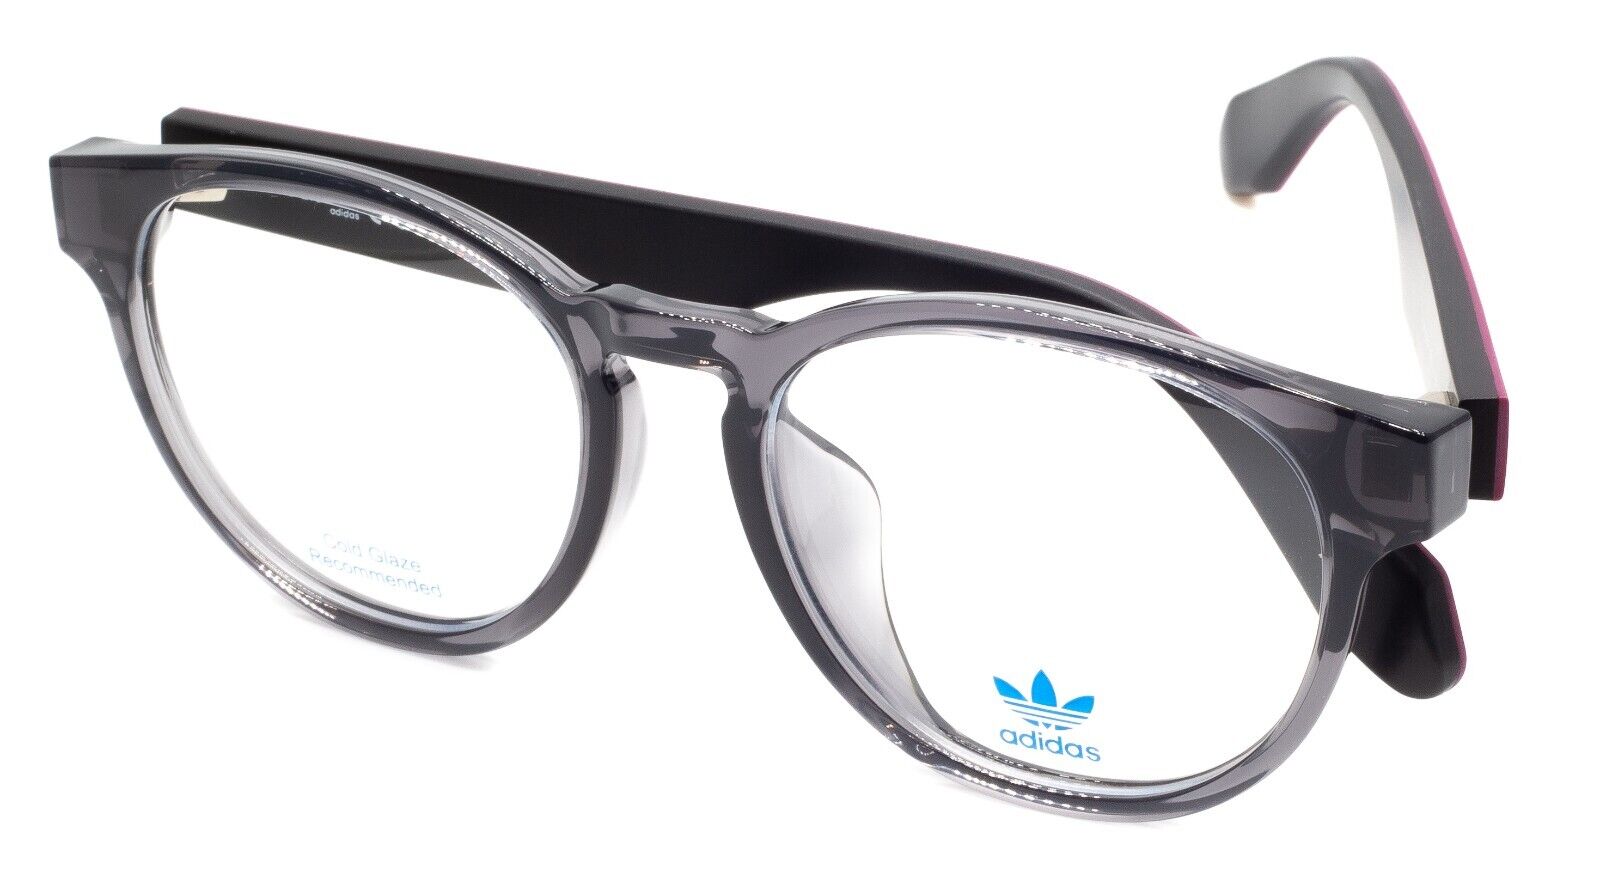 ADIDAS OR5008-F 020 54mm Eyewear Frames Eyeglasses - New - GGV Eyewear